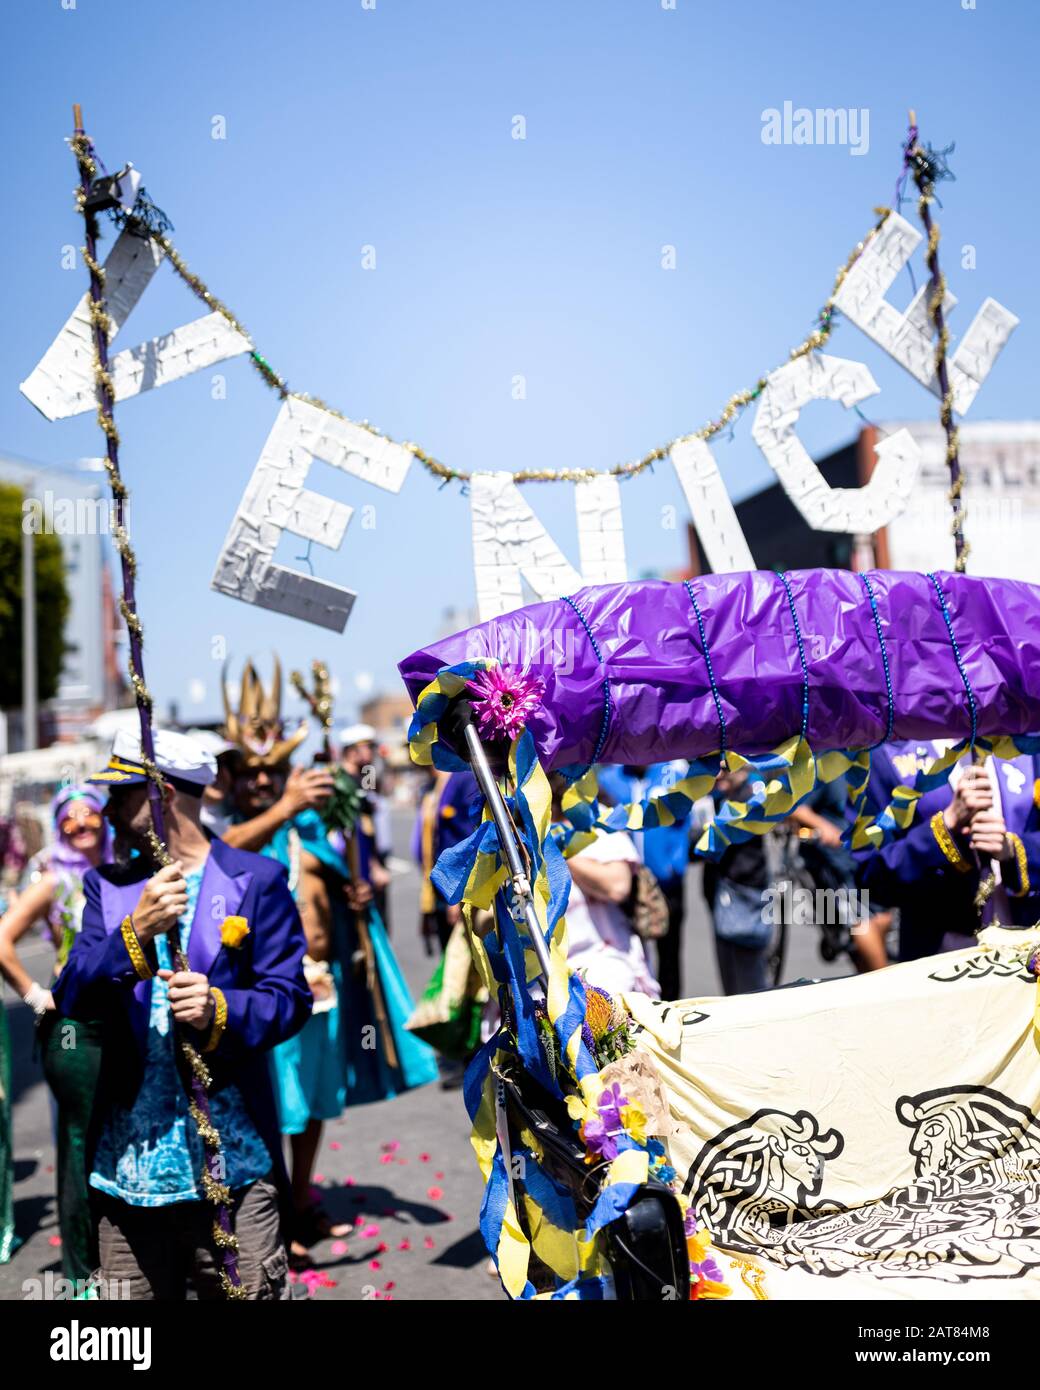 Desfile festivo con Mucha Gente con ropa colorida sosteniendo un cartel de Venecia. Esta procesión de vacaciones está llena de celebración y colores vibrantes. Foto de stock